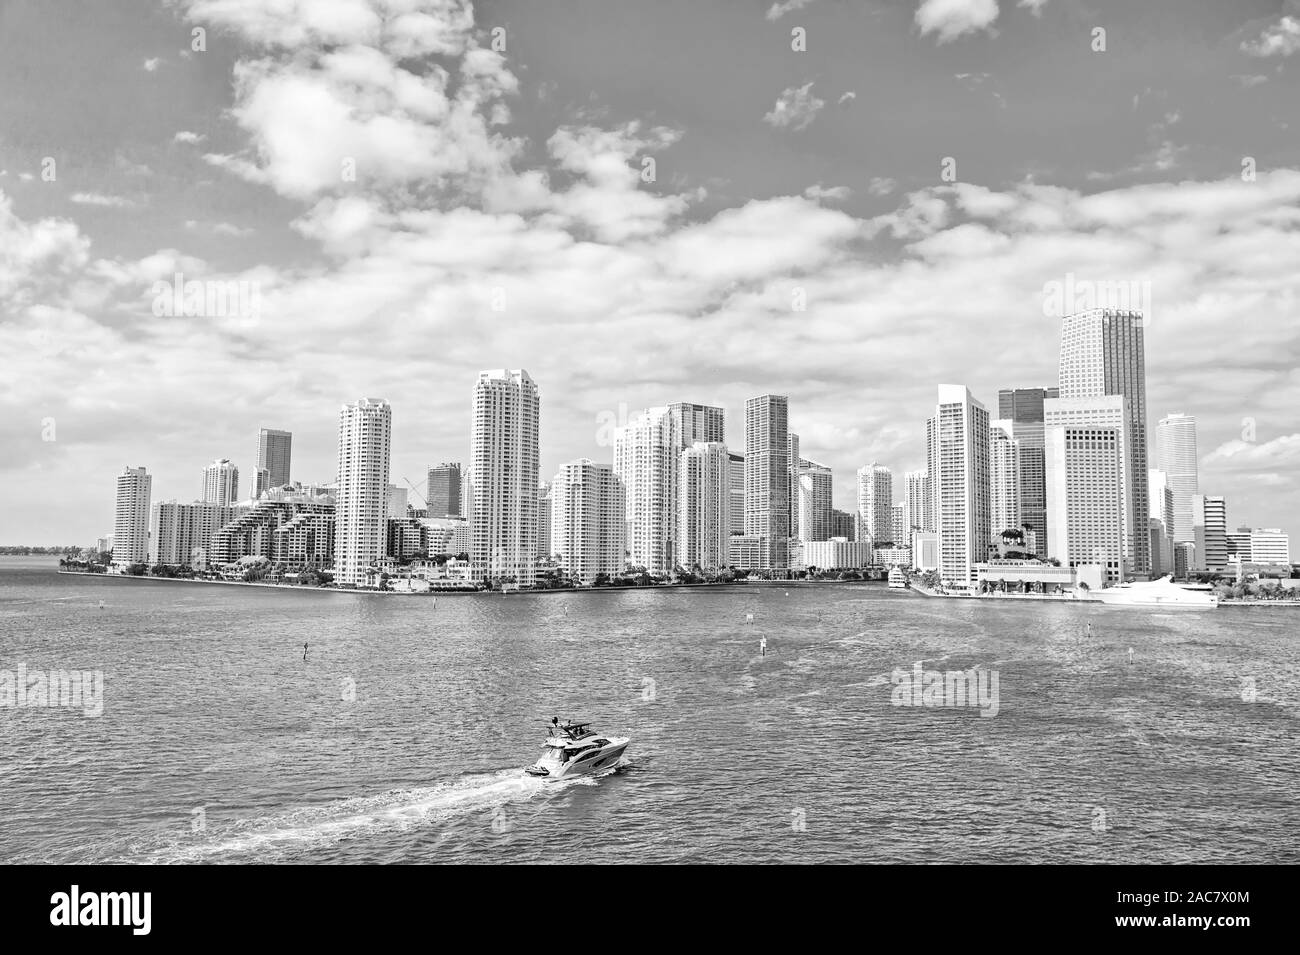 Quartier des affaires de Miami. Concept de richesse. Impressionnante architecture tours. Gratte-ciel et le port. Attractions à voir. Bord de mer bordée de marinas. Centre-ville Centre-ville de Miami. Banque D'Images